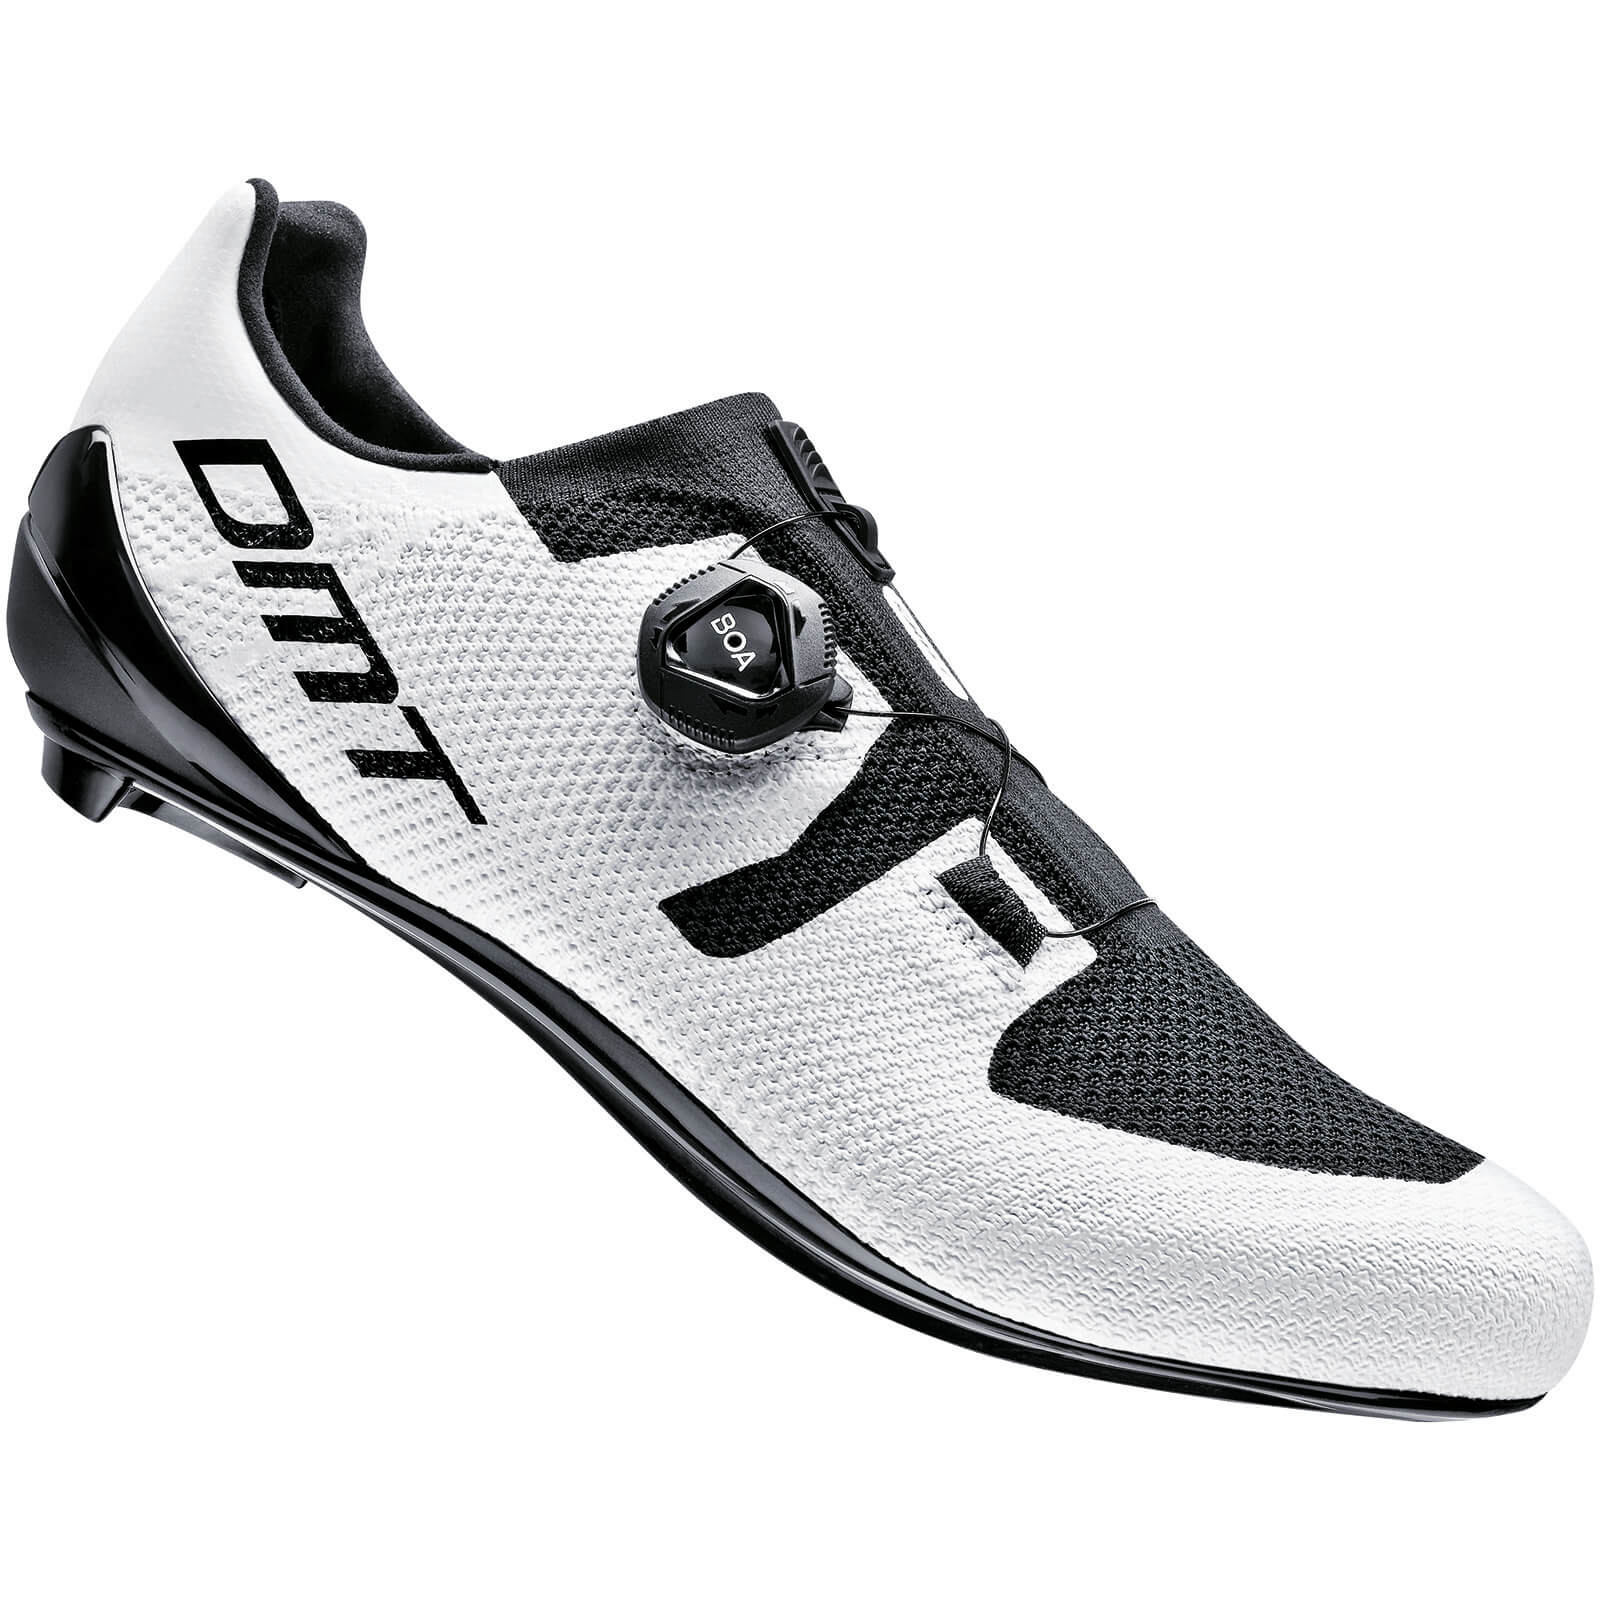 DMT KR3 Road Shoes - EU 45.5 - White/Black